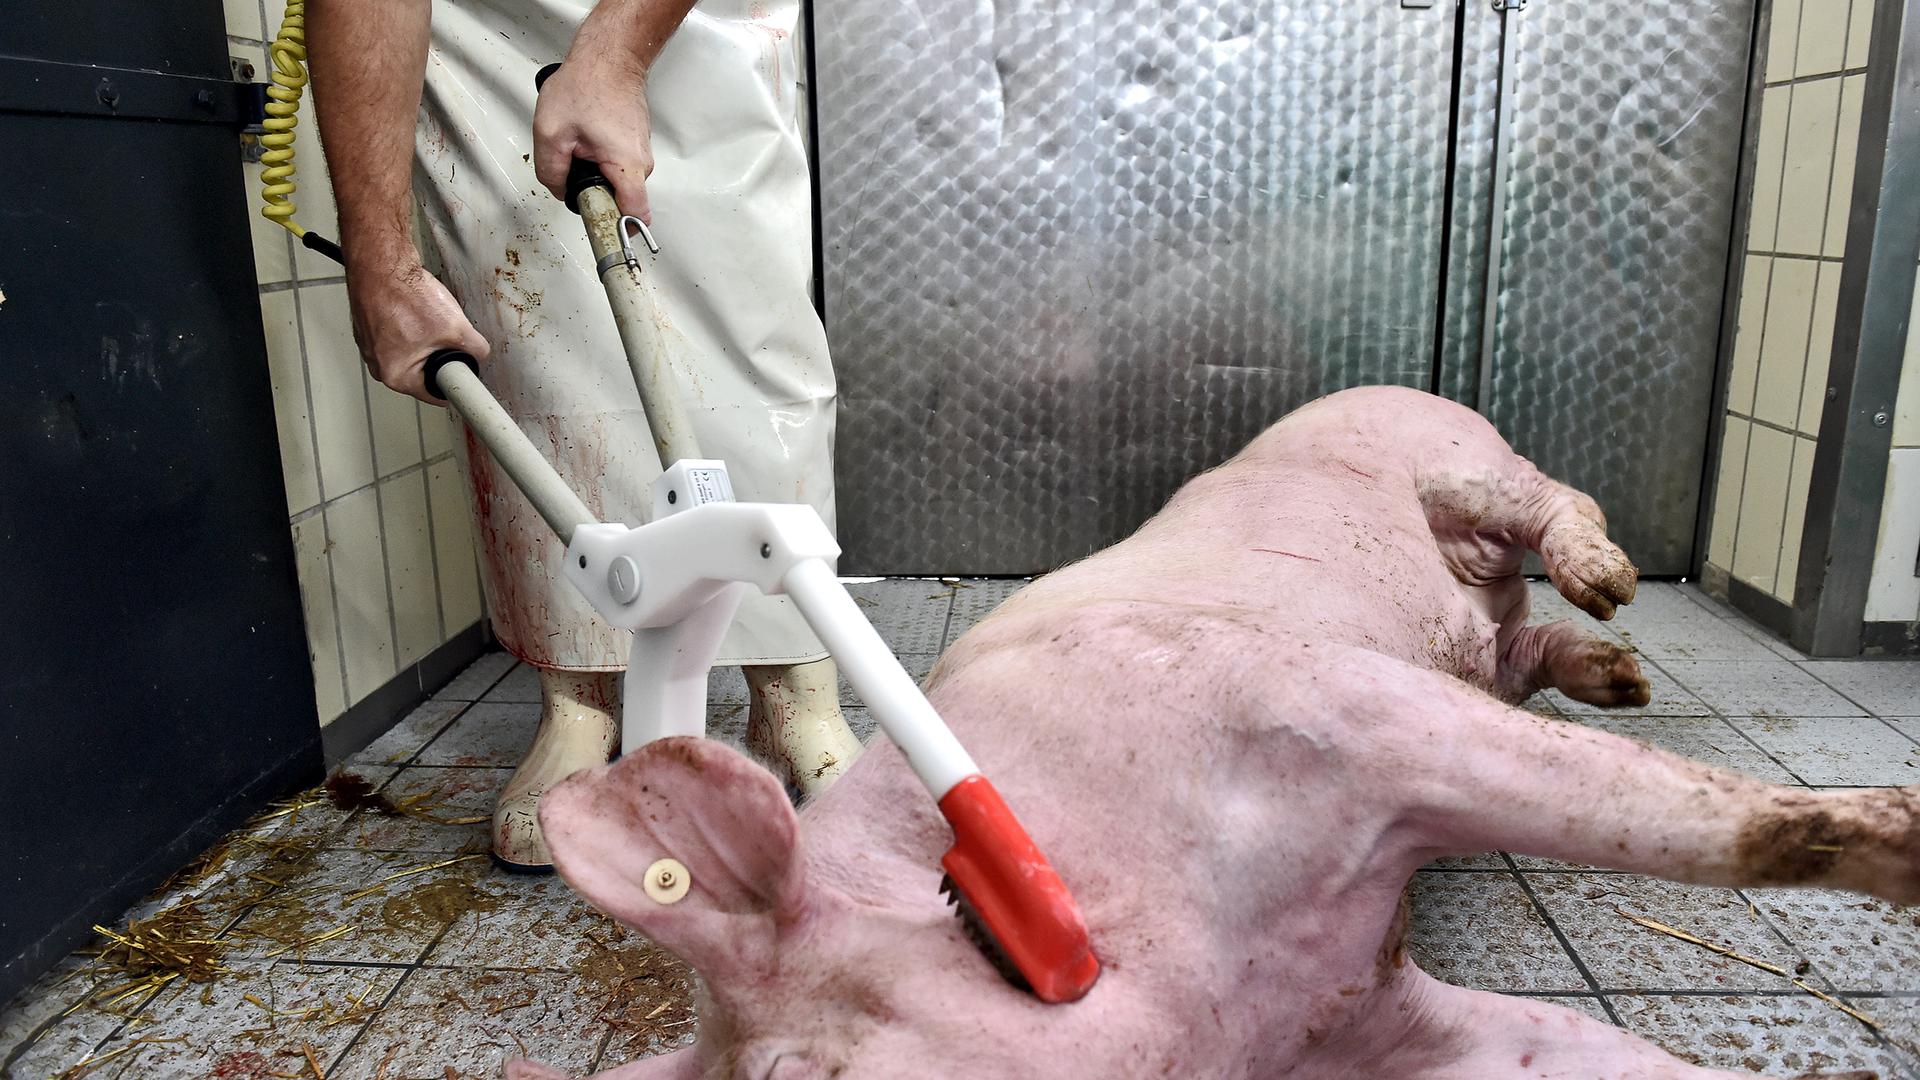 Elektro-Schock: Rund zwei Ampere für mindestens vier Sekunden, so werden die Schweine betäubt.